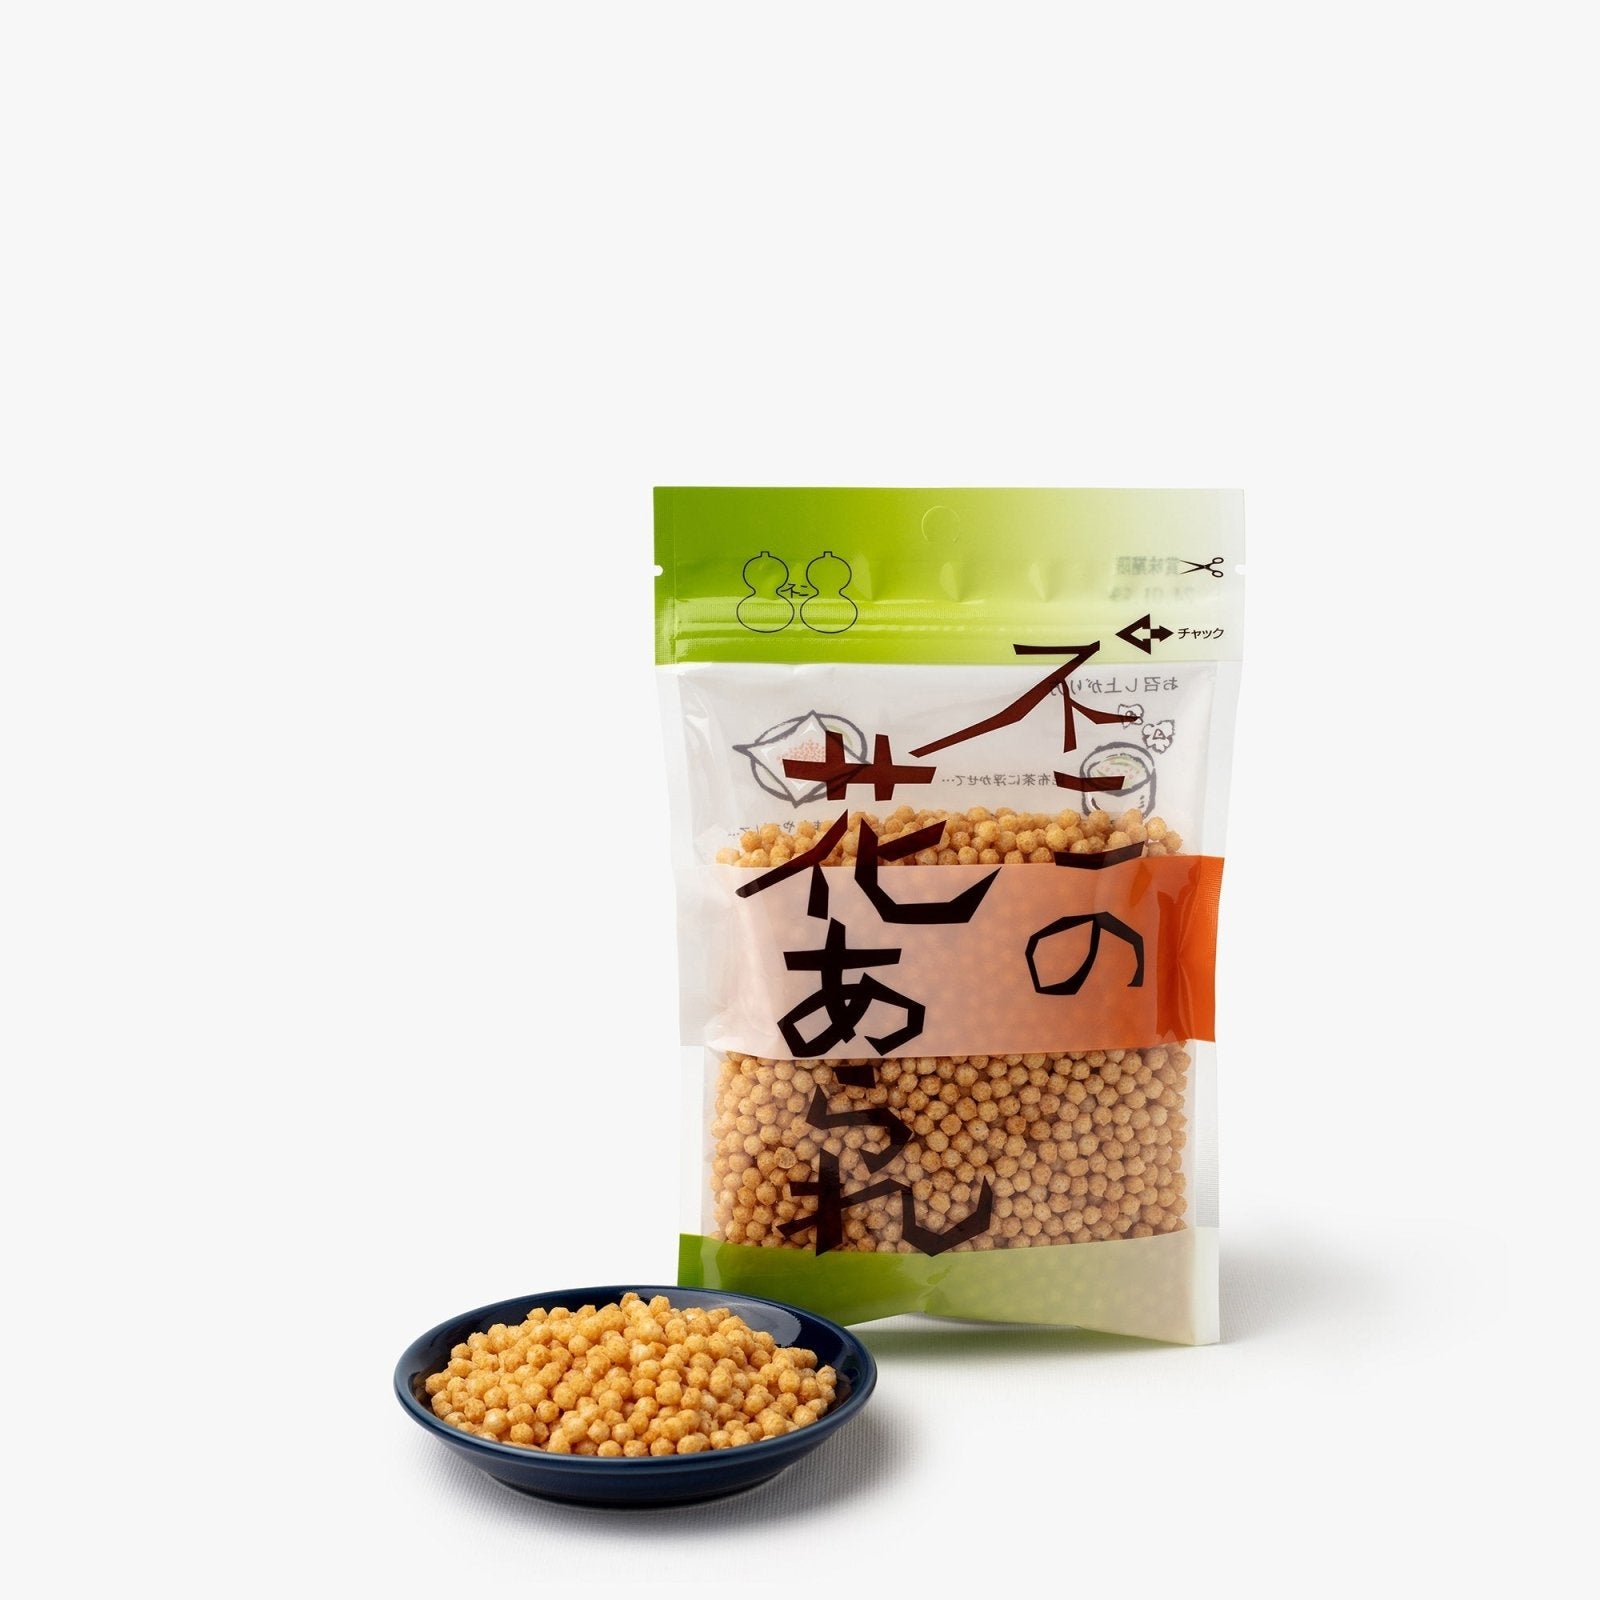 Billes de riz soufflé - 55g - Fuji Shokuhin - iRASSHAi